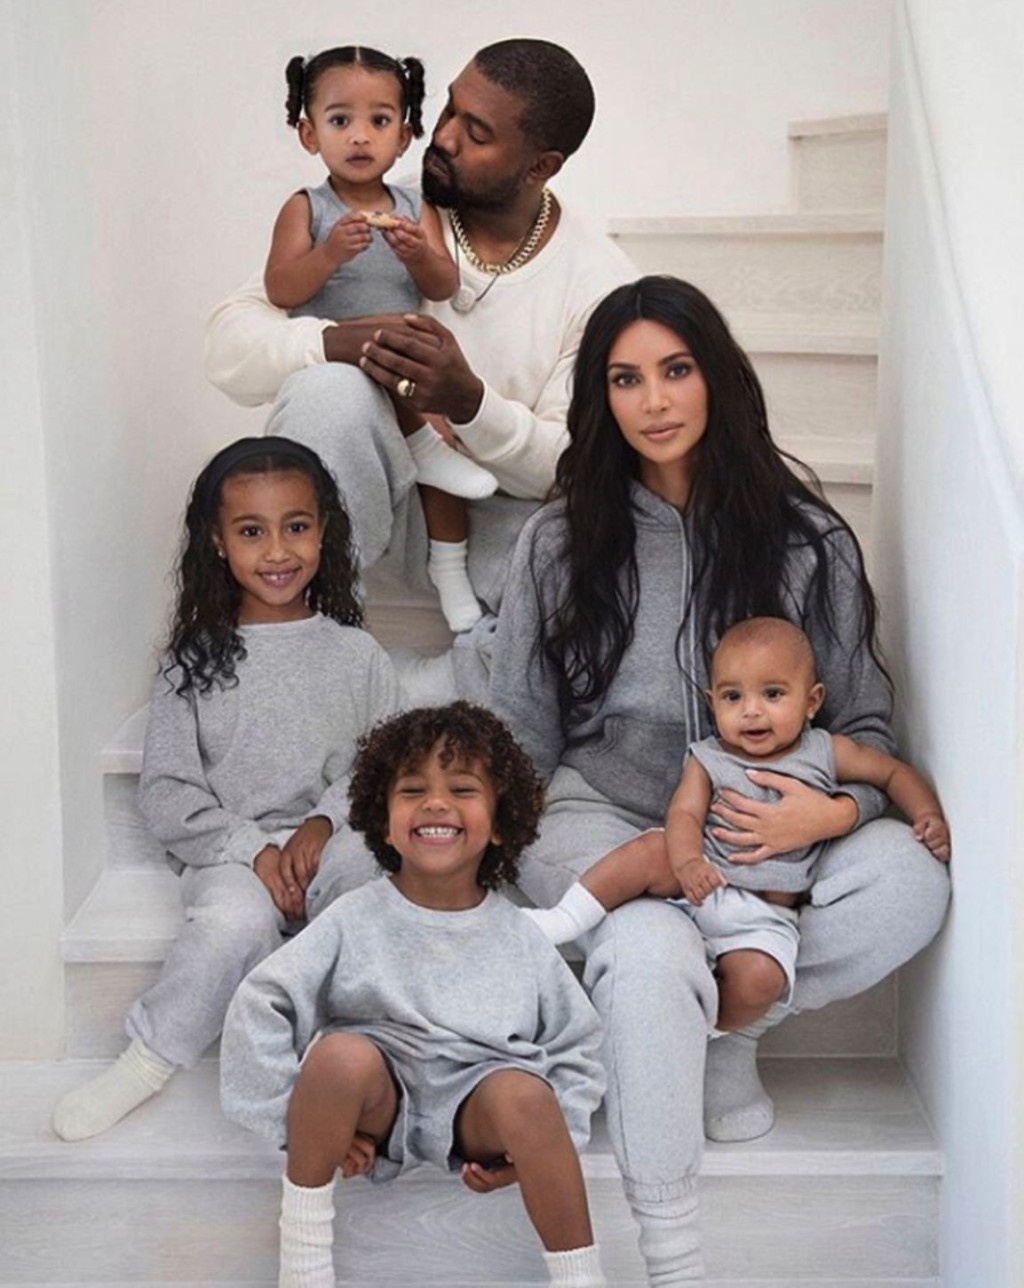 美國饒舌天王Kanye West（Ye）與名媛金卡戴珊（Kim Kardashian）於2021年結束7年婚姻。